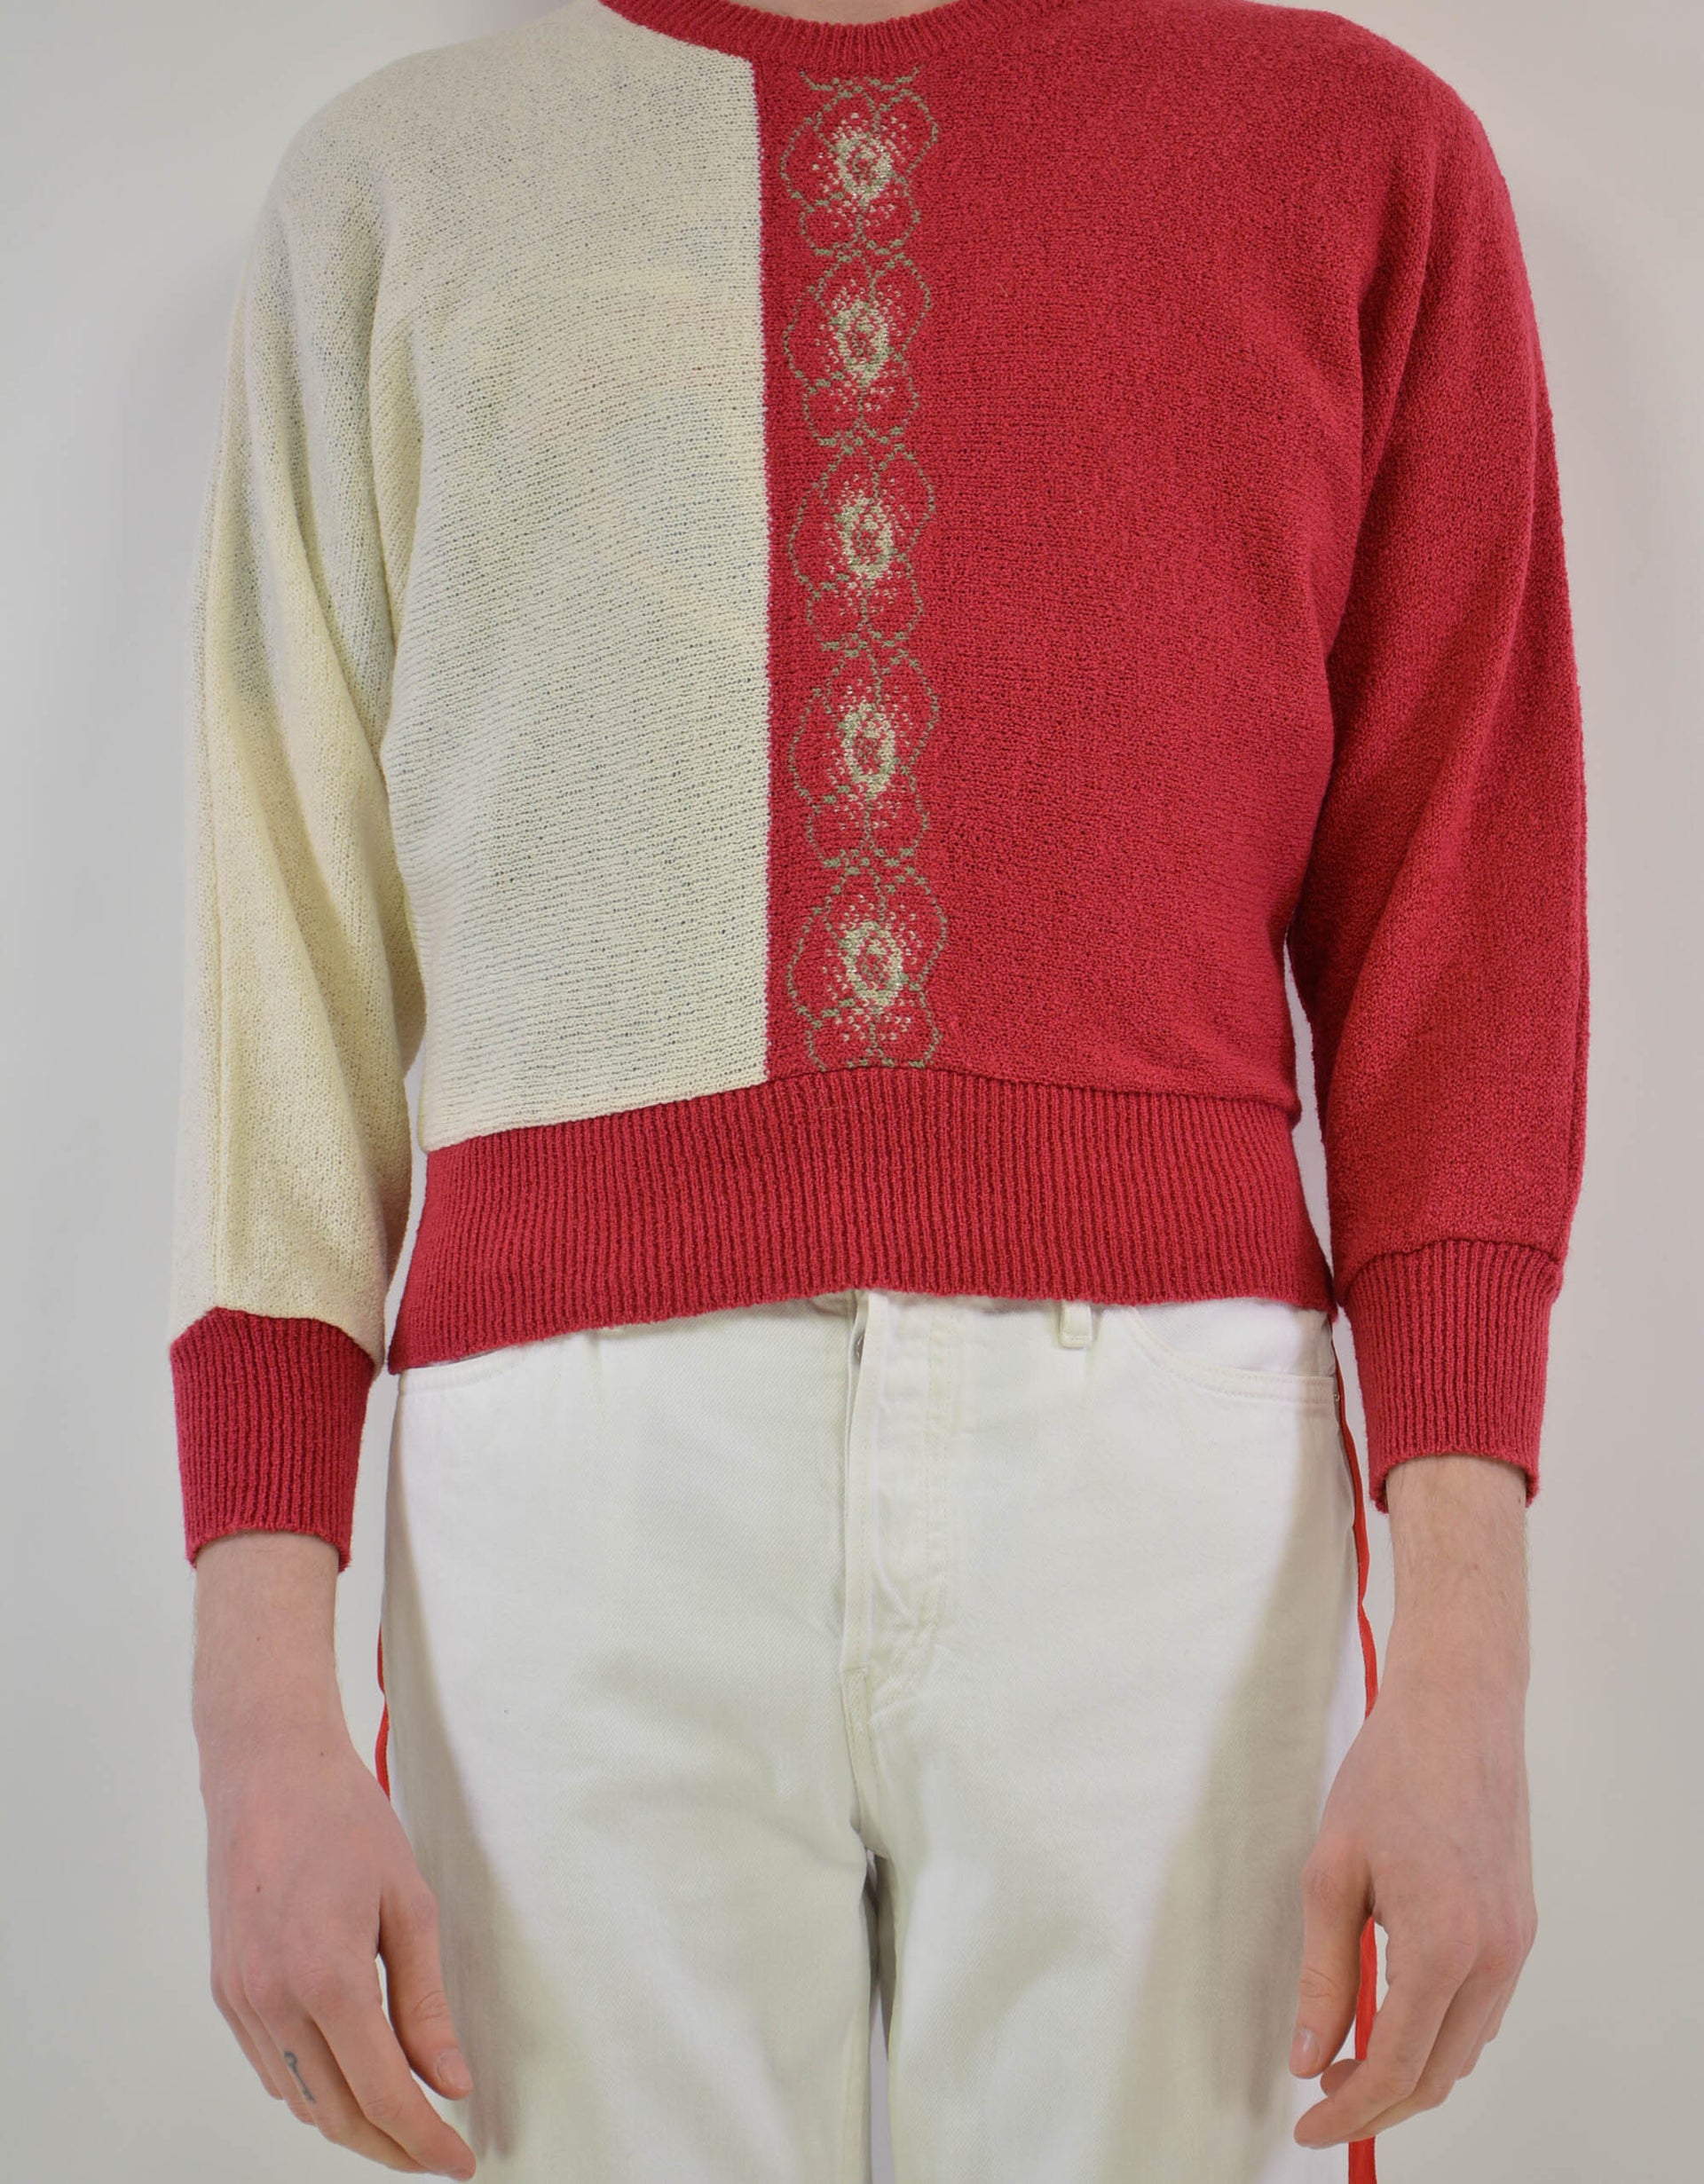 Knitwear sweater - PICKNWEIGHT - VINTAGE KILO STORE